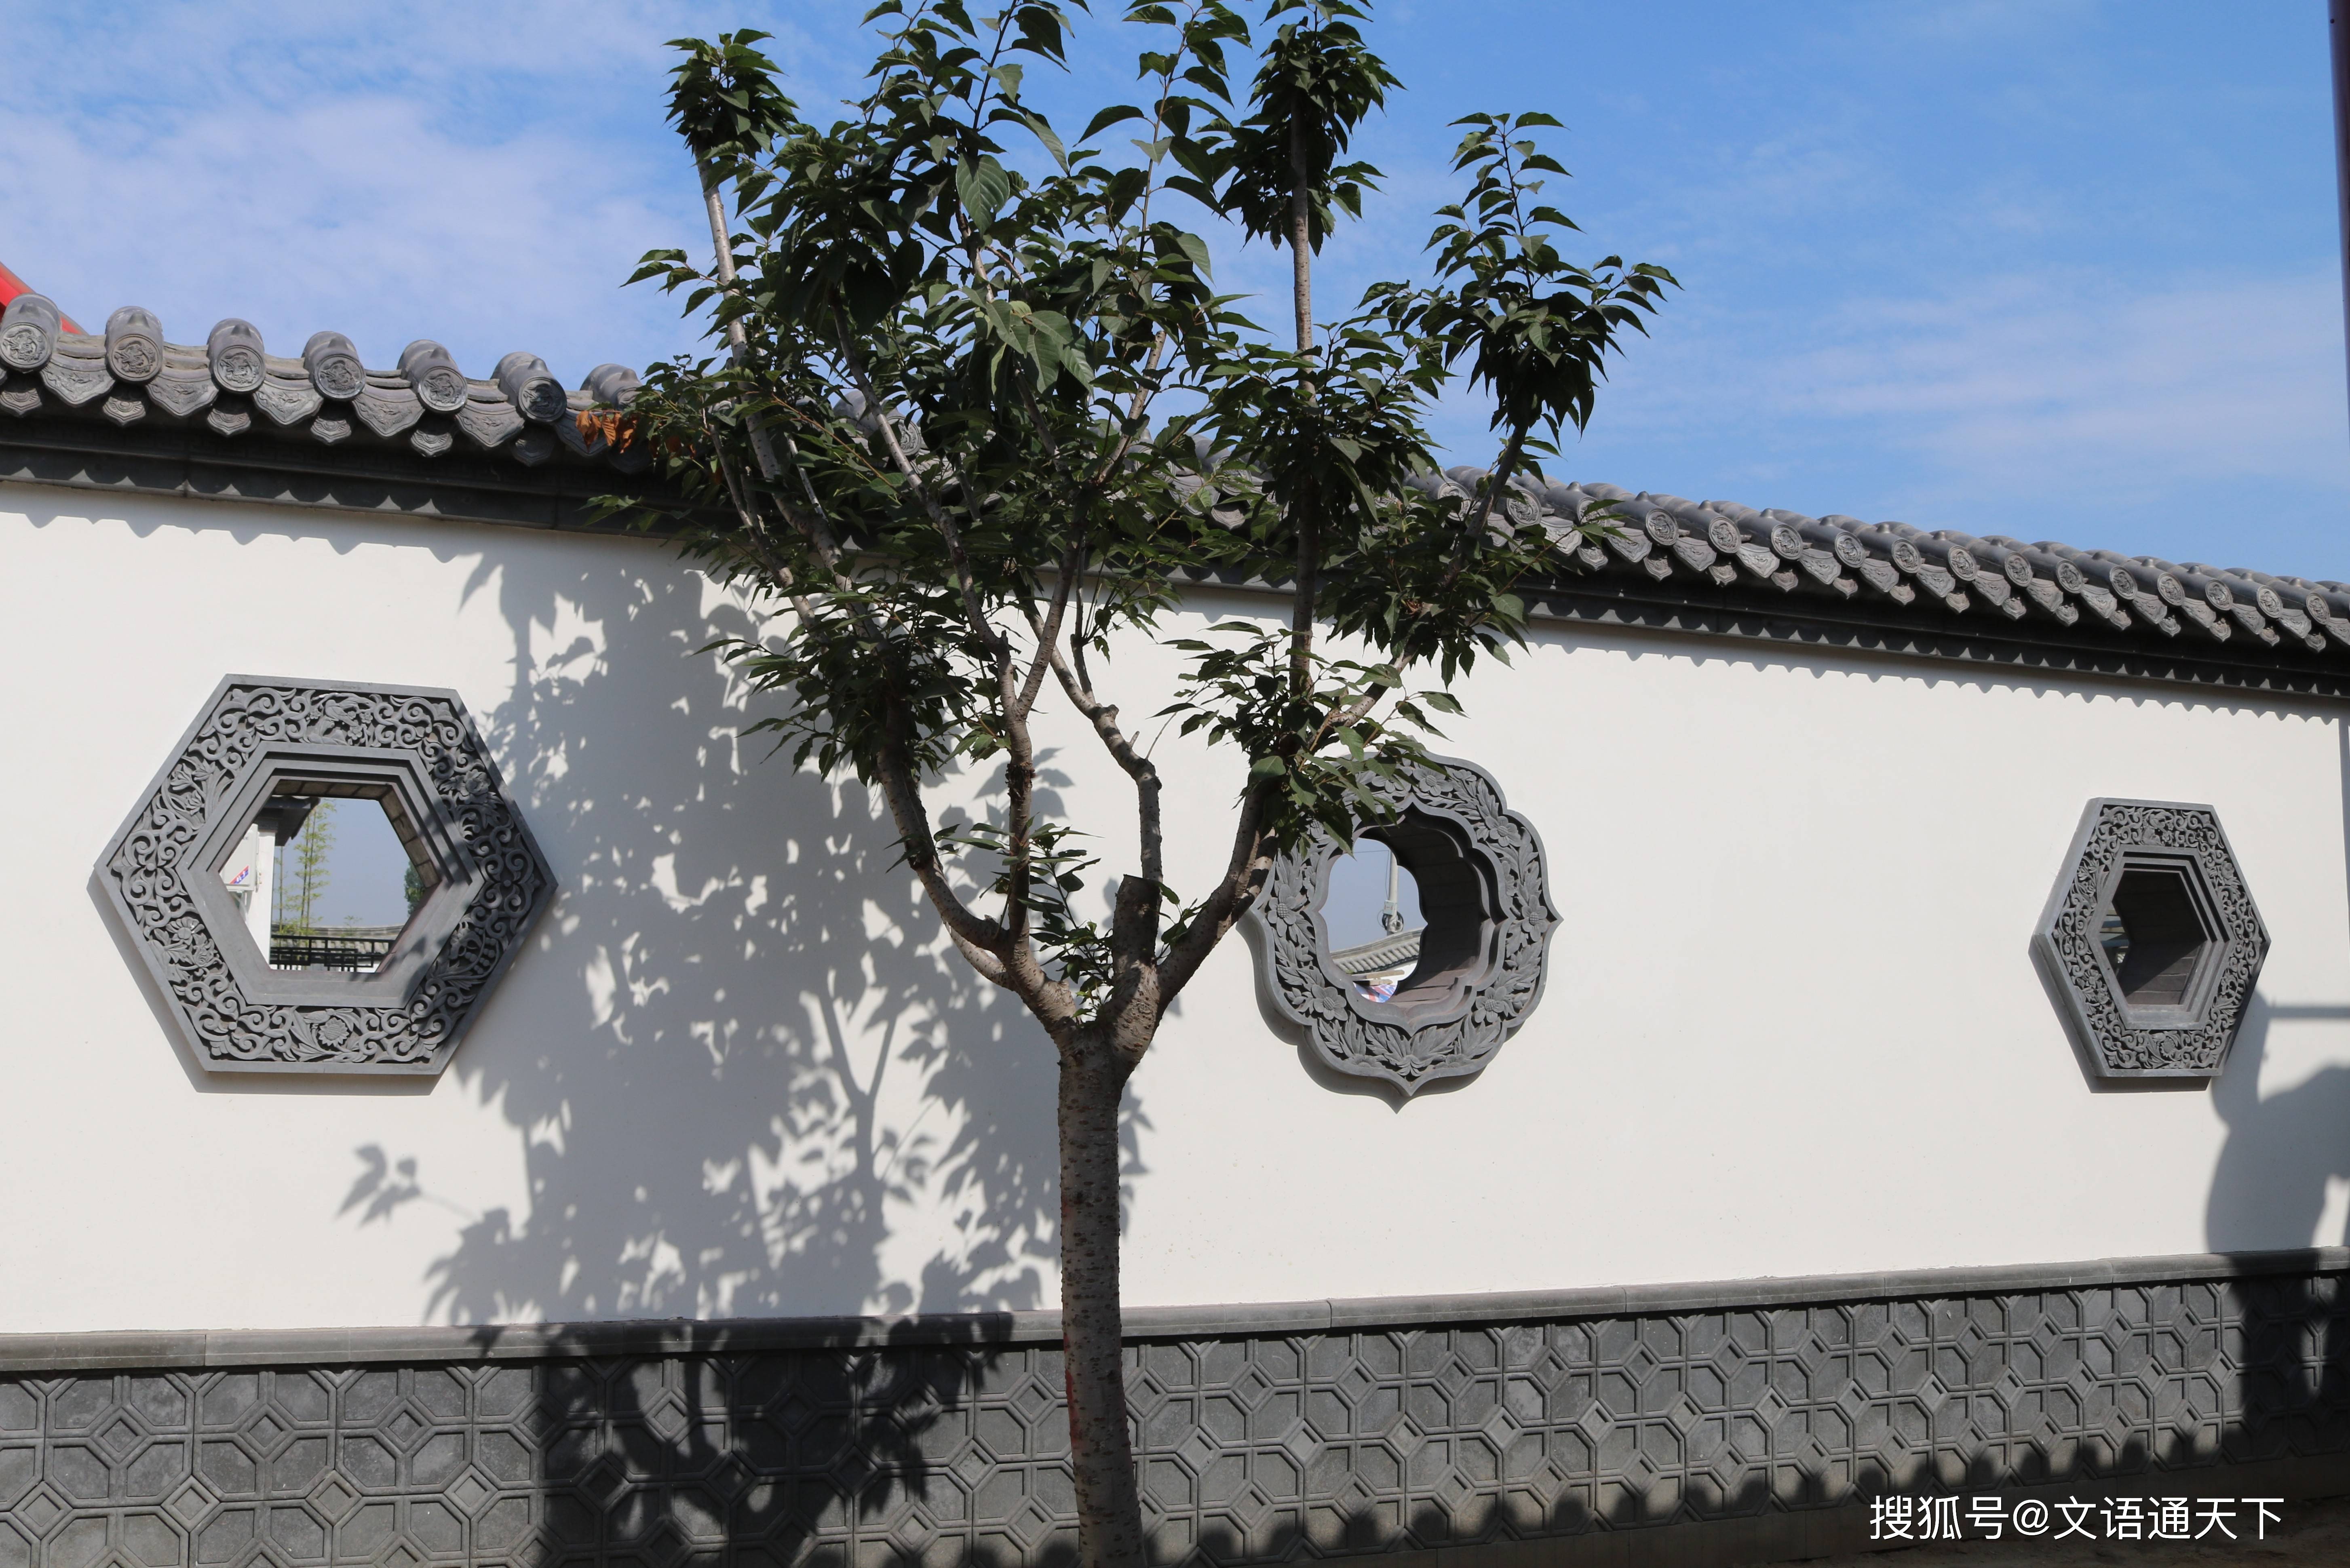 北京老街新中式围墙怎么建?看看仿古青砖搭配什锦窗做墙体